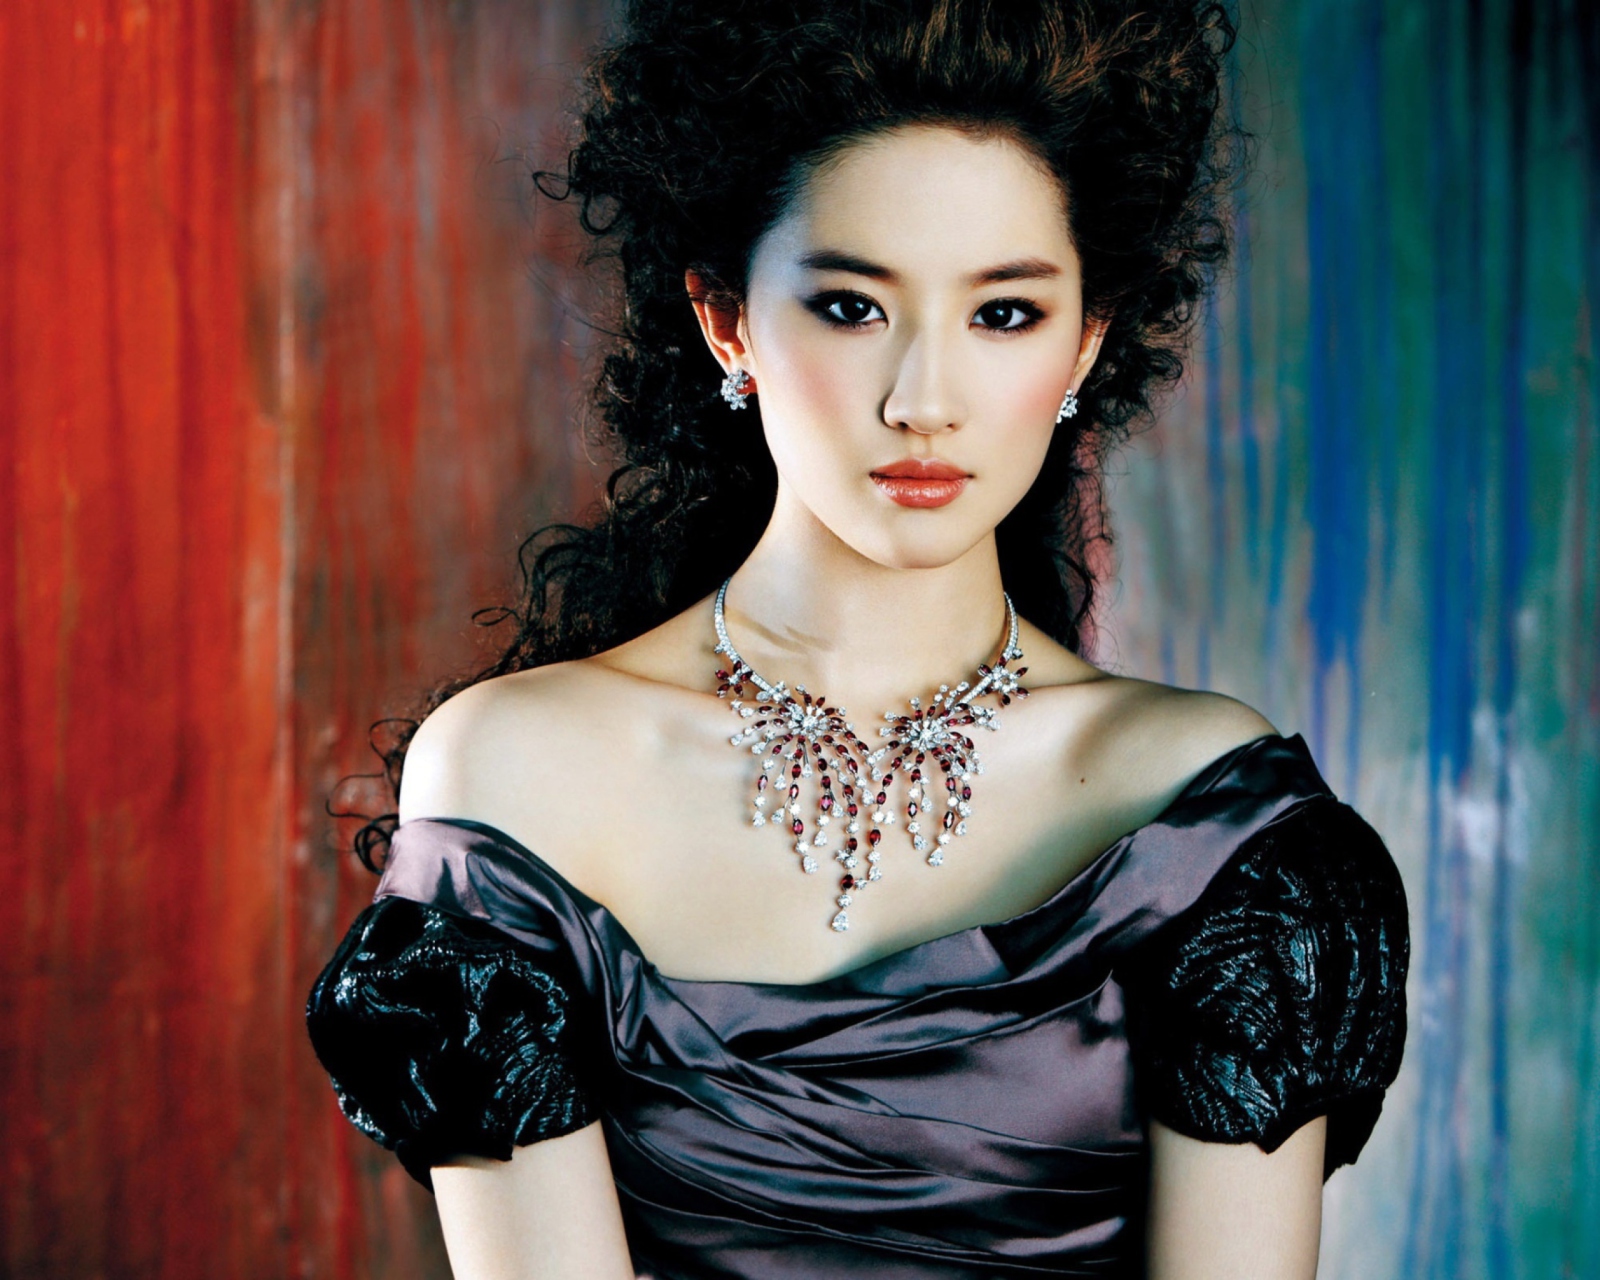 Das Liu Yifei Chinese Actress Wallpaper 1600x1280